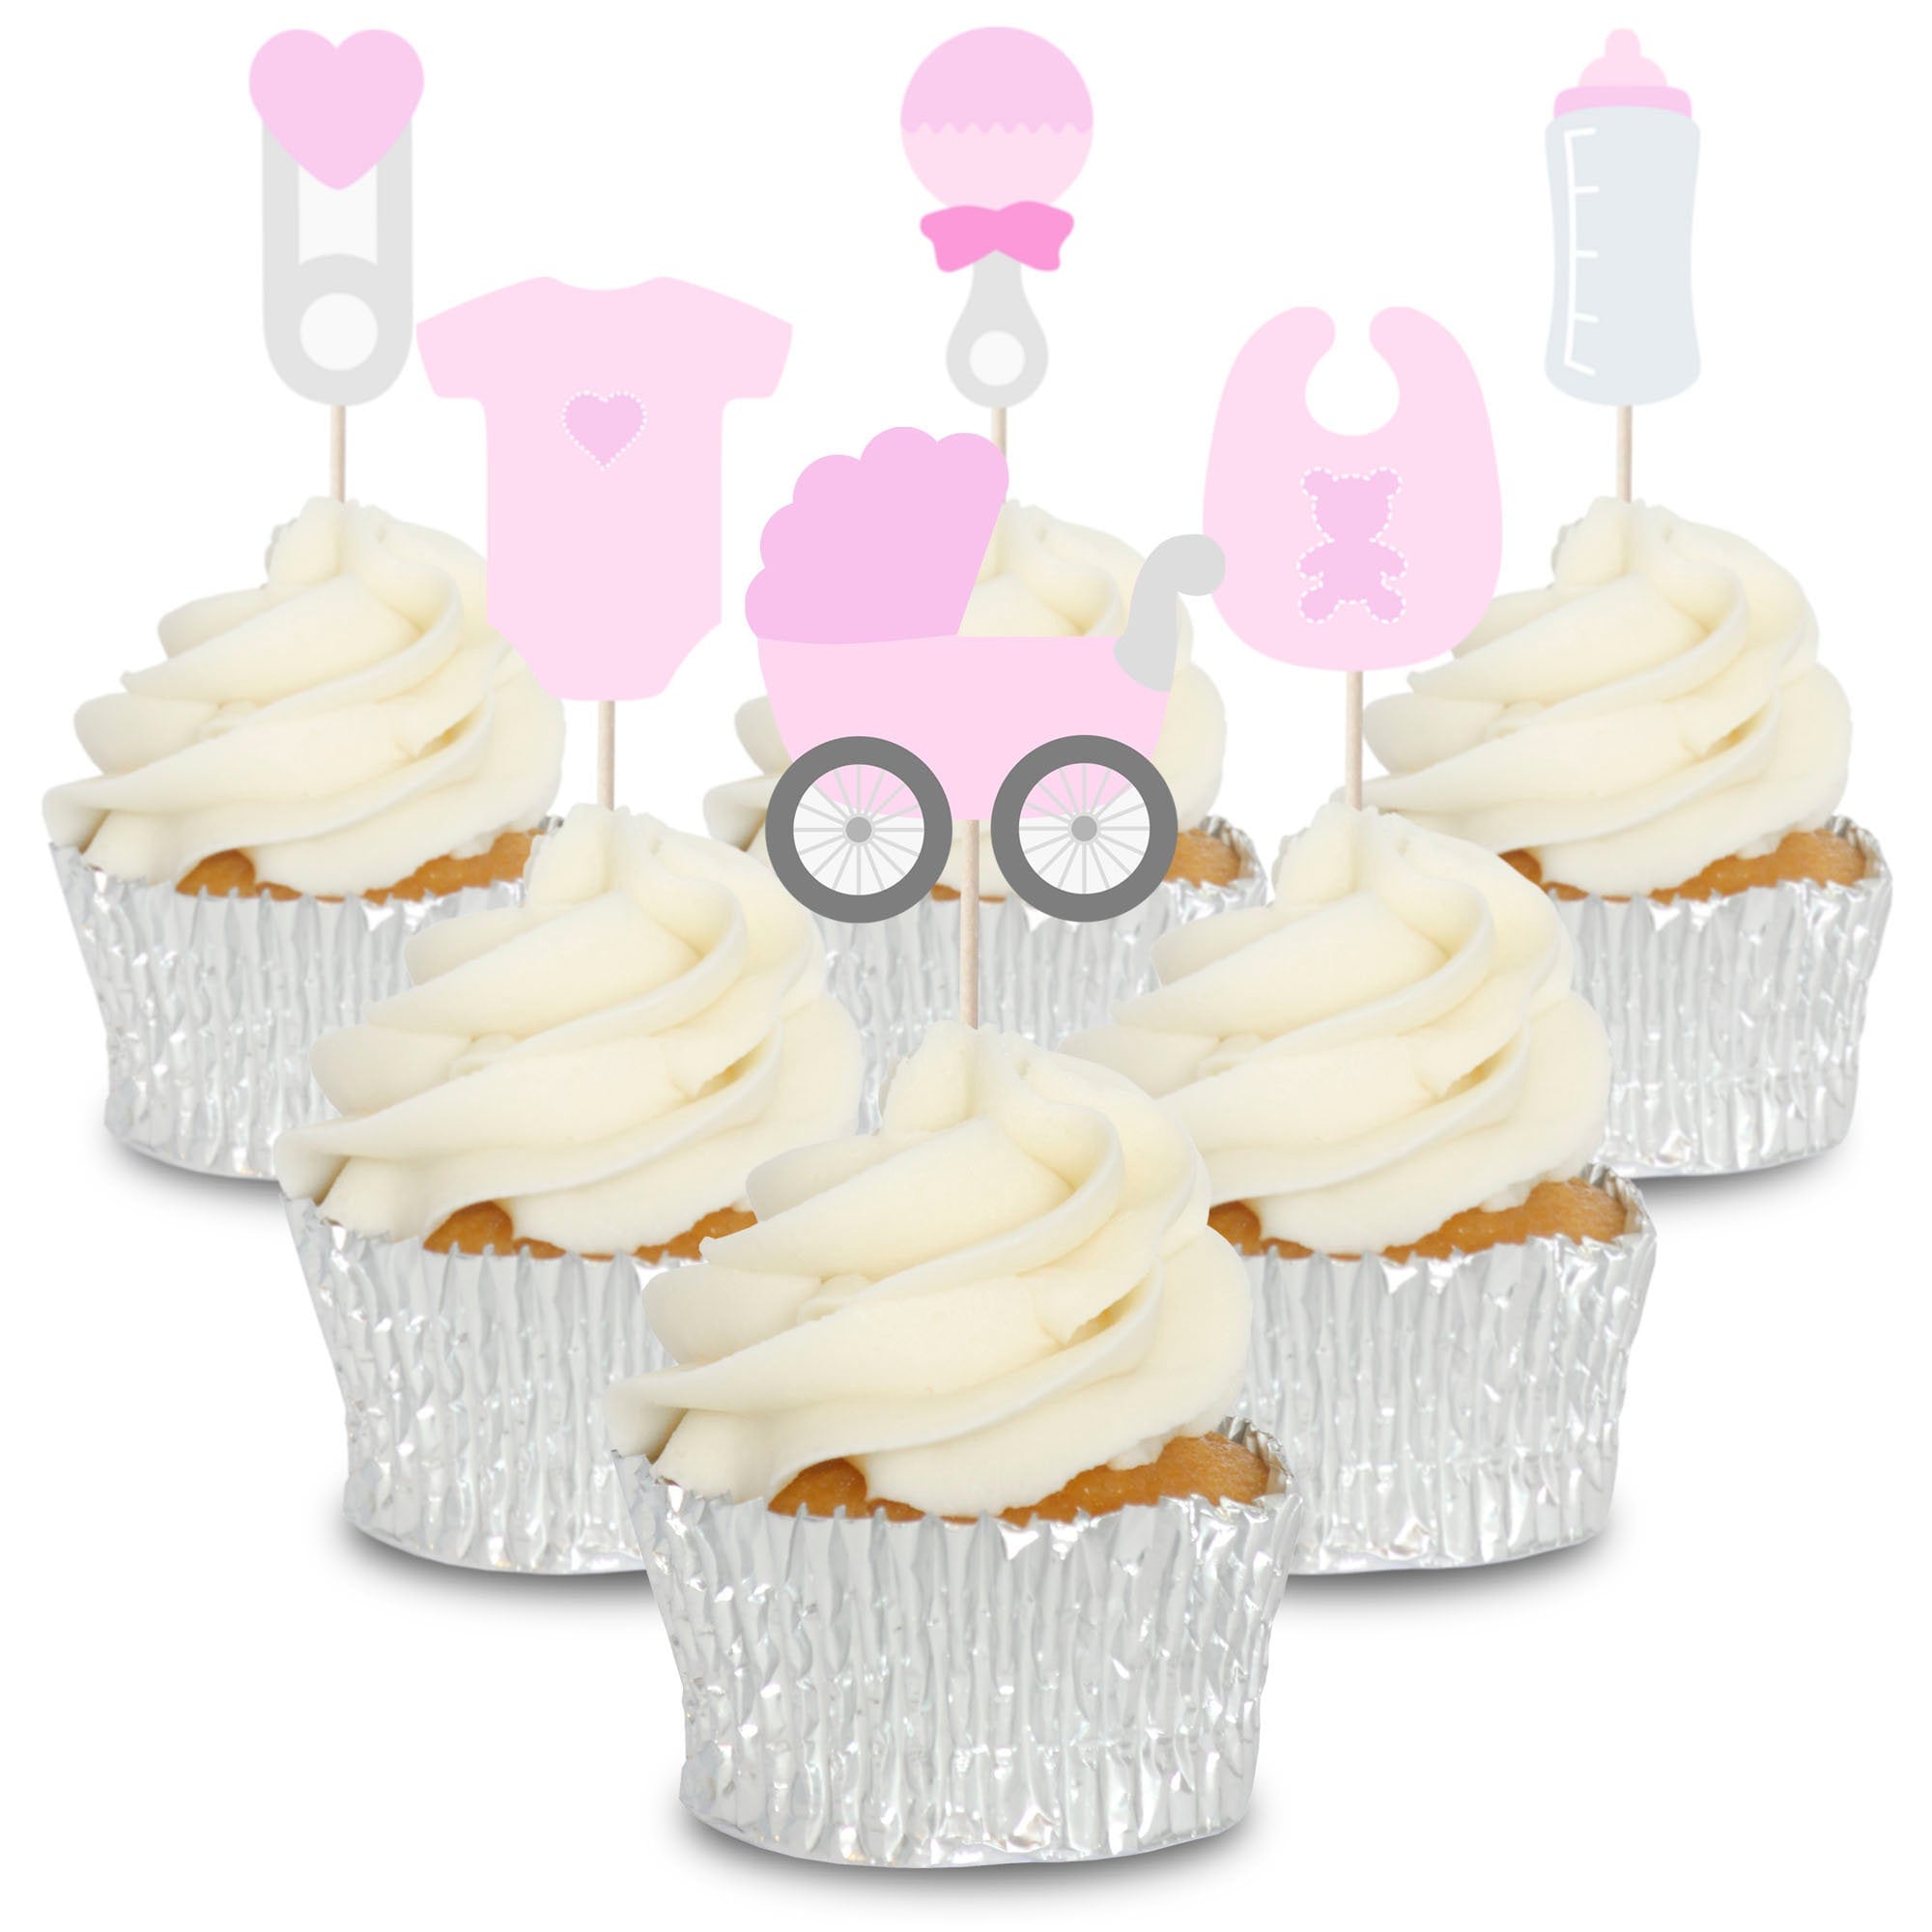 Bilder bild cupcake bilder bild bilder bild bild küche bild bilder muffin bilder muffin cupcake